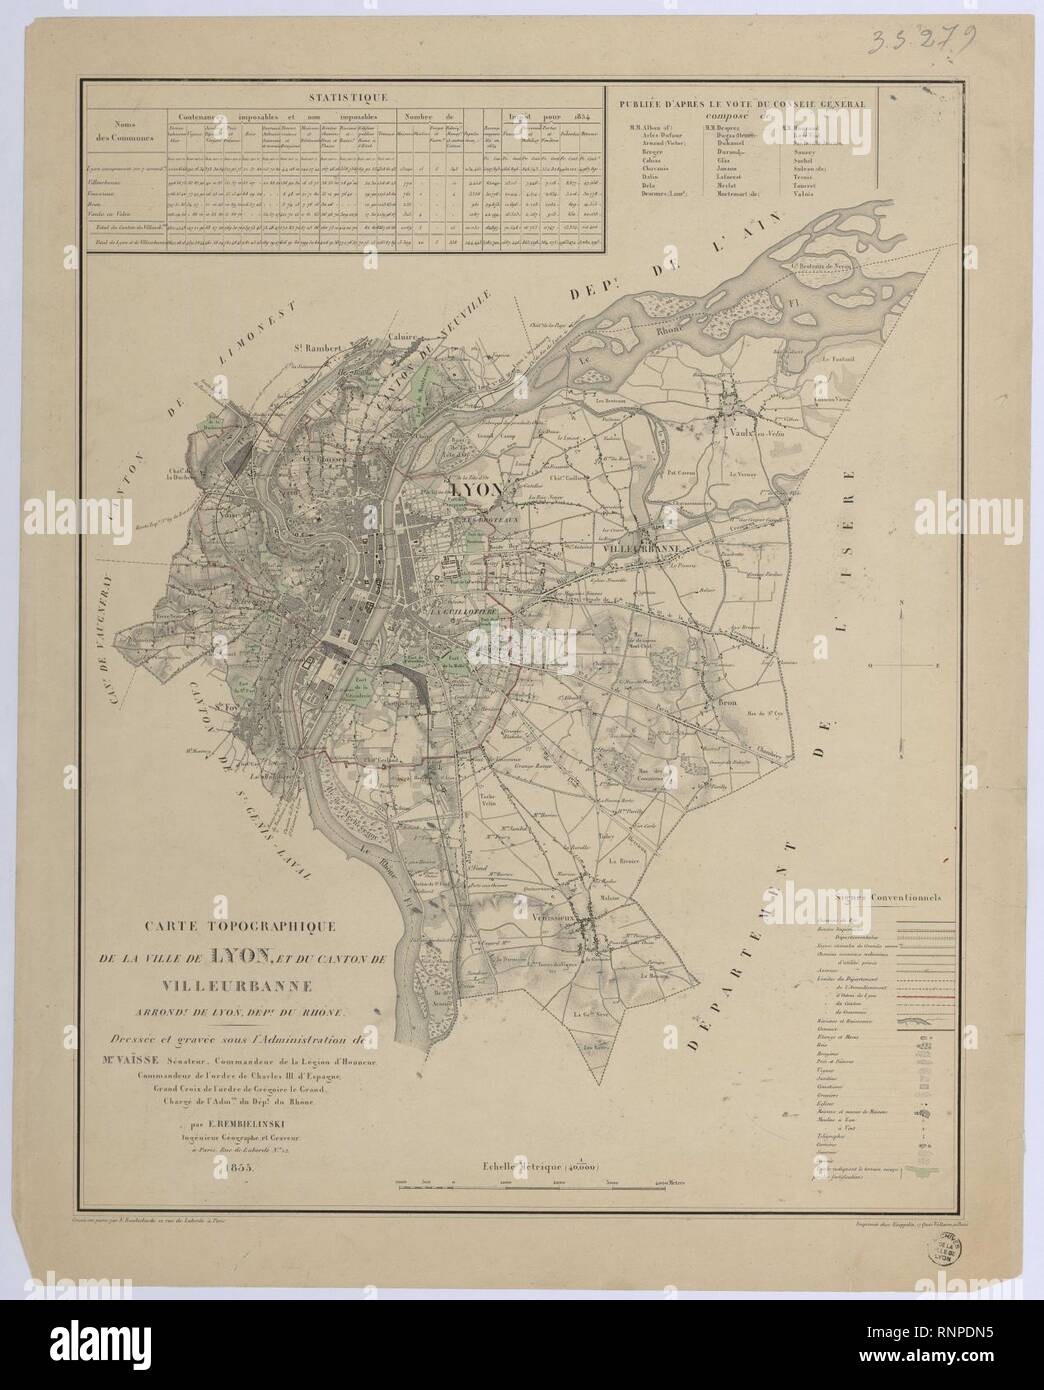 Carte topographique de la ville de Lyon et du canton de Villeurbanne. Foto Stock